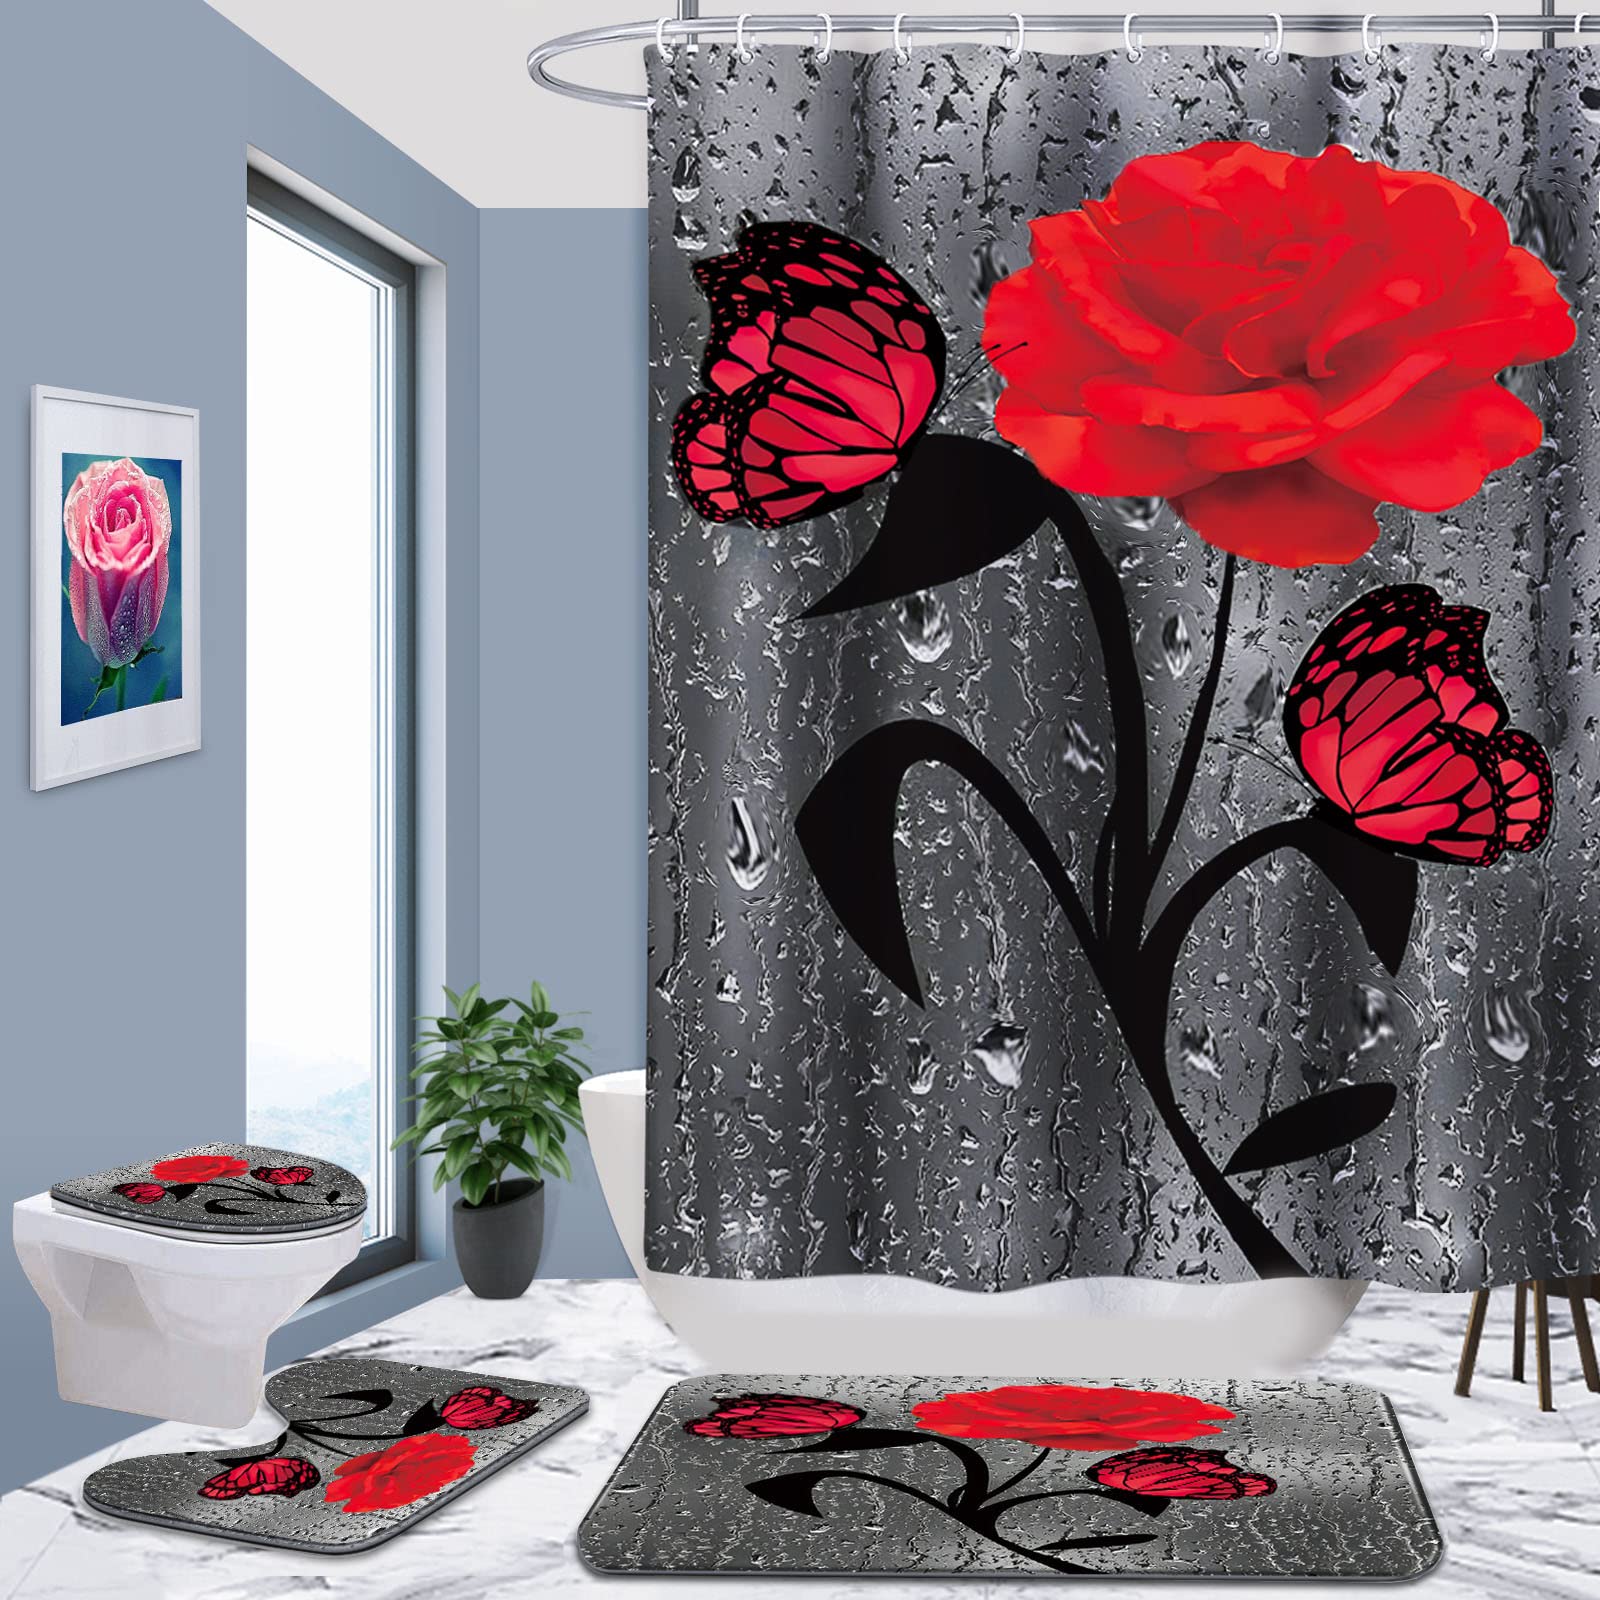 Set pentru baie: perdea, covorase si husa de toaleta, Red Rose